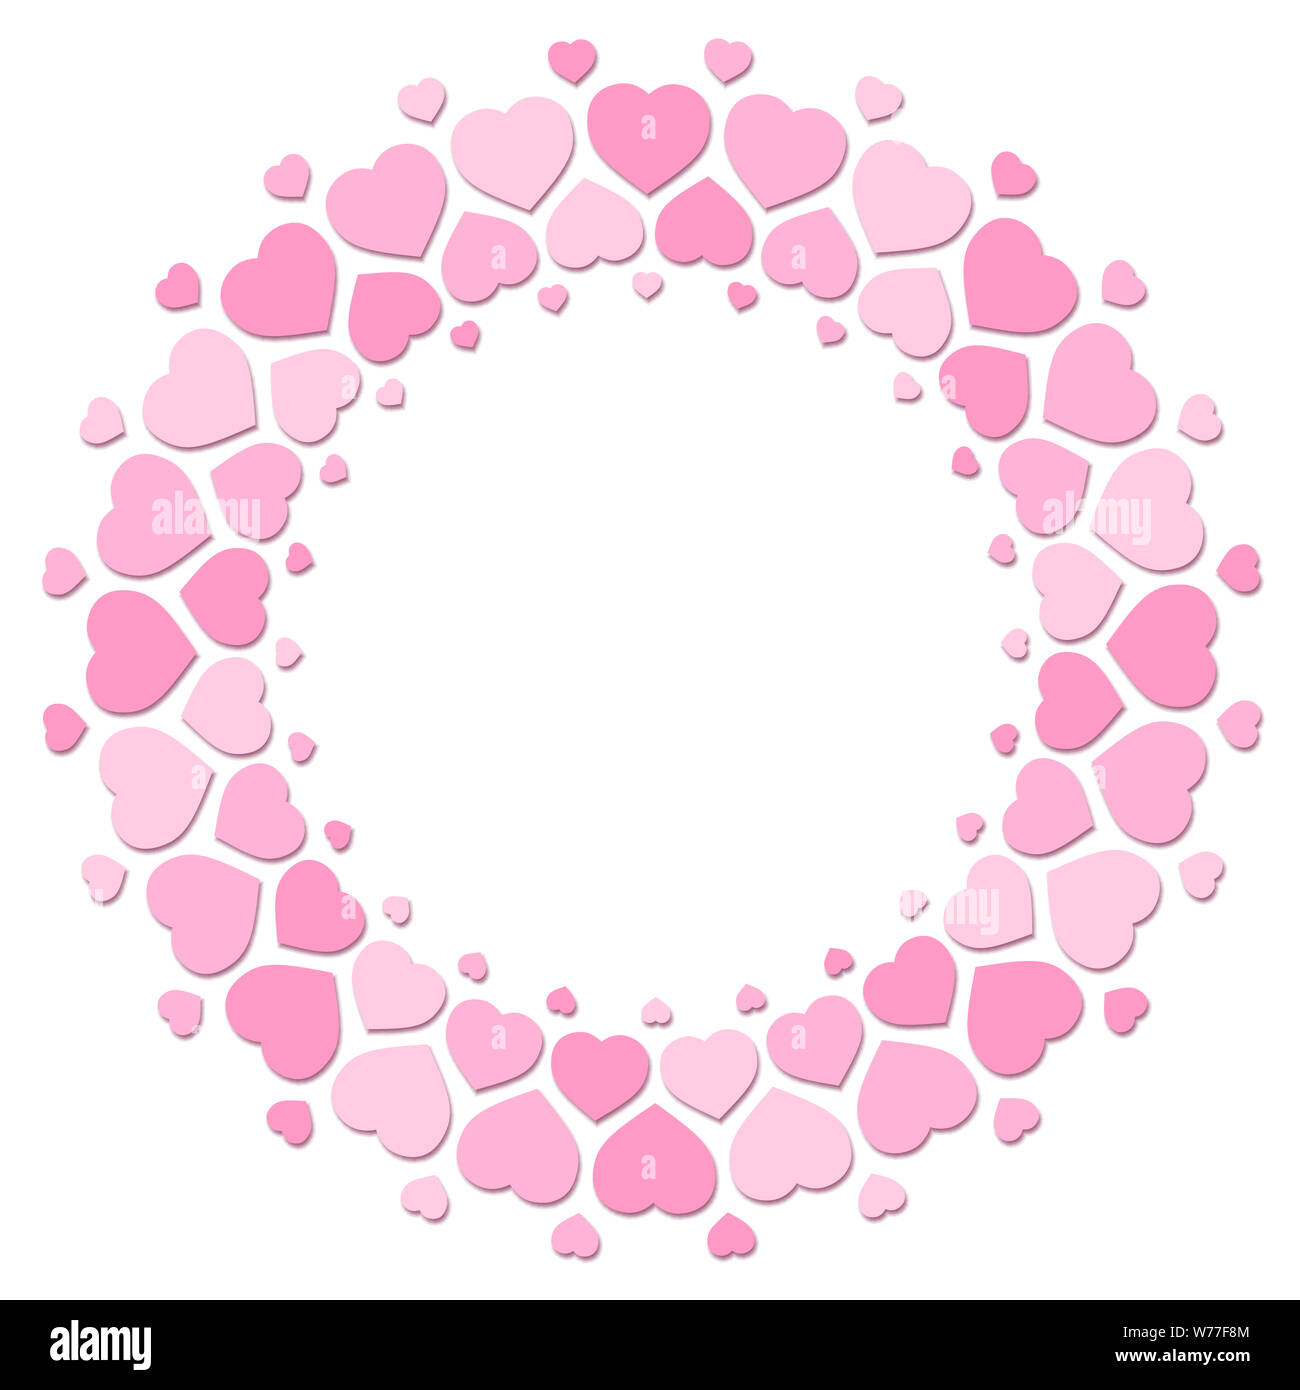 Cuori rosa formando una cornice rotonda con centro vuoto. Immagine su sfondo bianco. Foto Stock